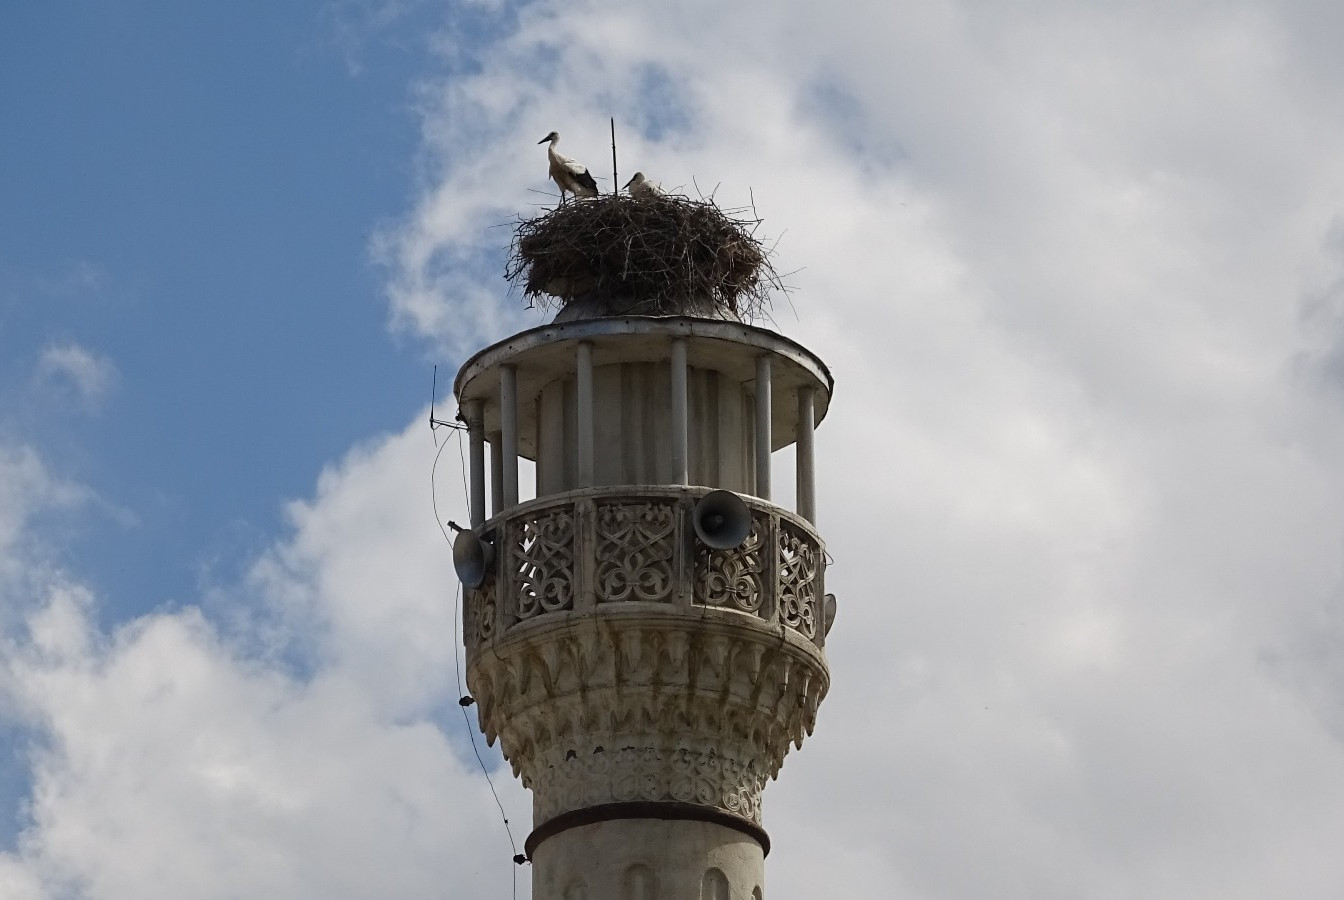 Tokat Havalimanına iniş-kalkış yapan uçaklar için tehlike oluşturması nedeniyle Küçükbağlar Köyü’ndeki caminin minaresi 2008 yılında 8 metre kısaltıldı. 